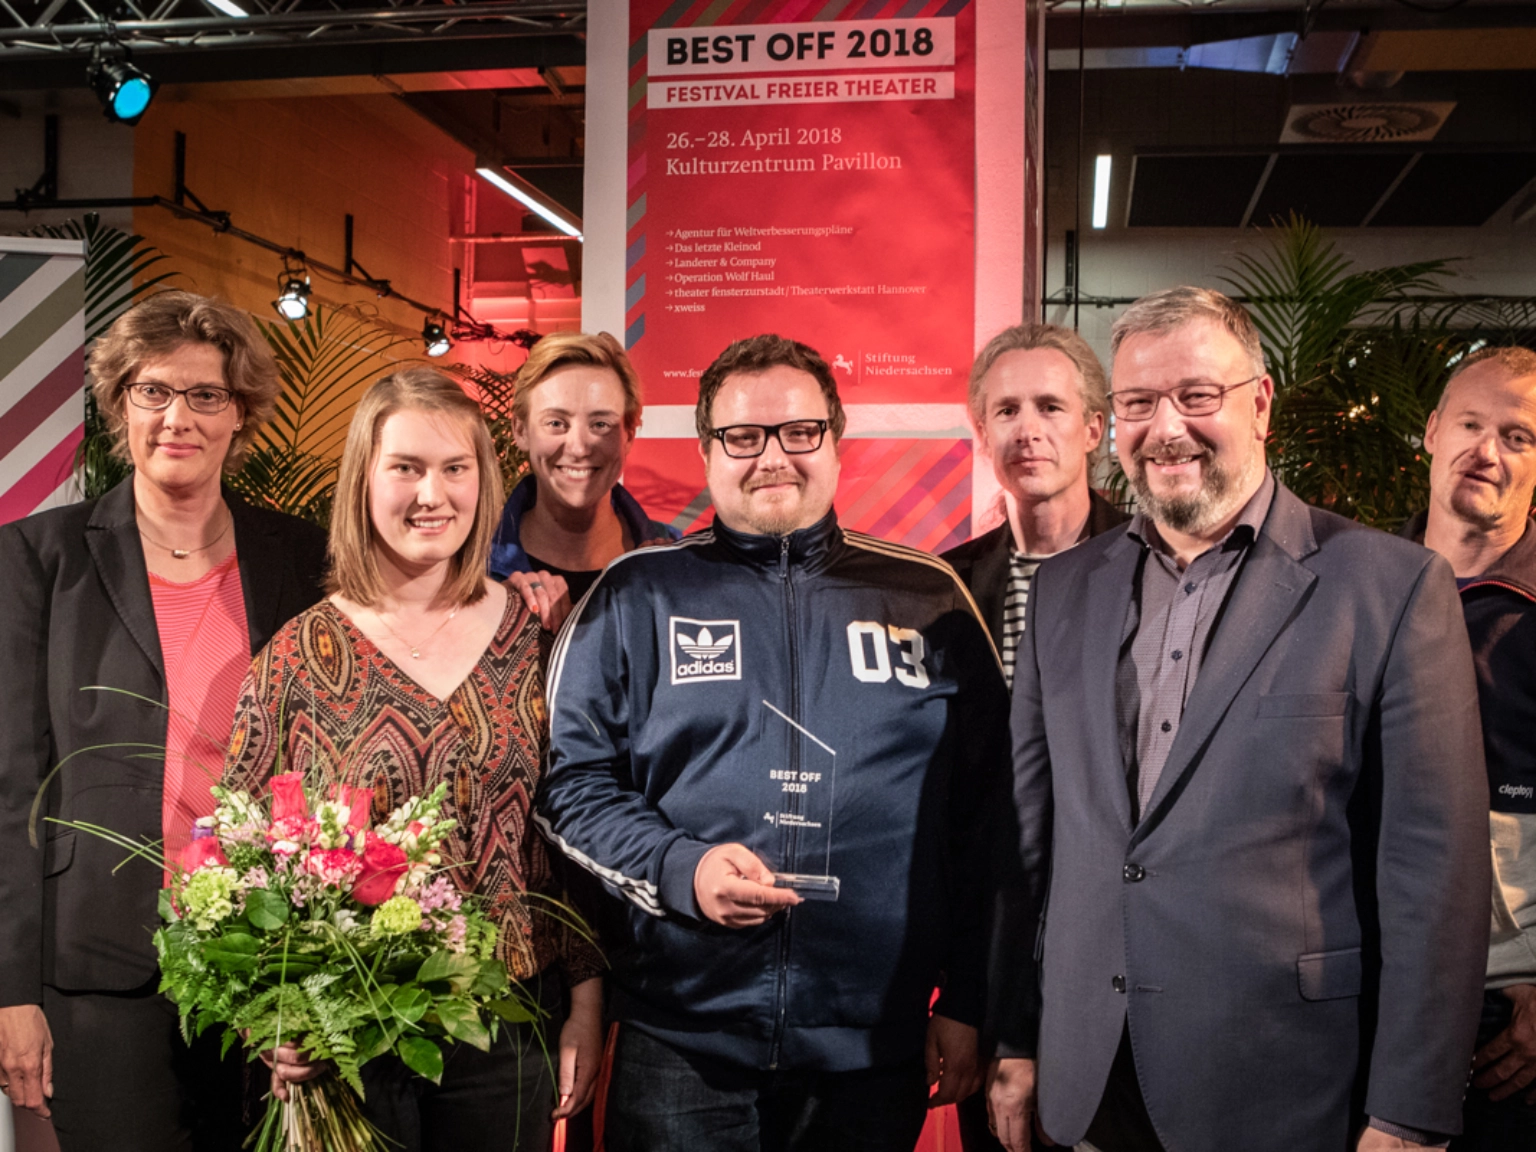 Preisverleihung Best OFF 2018, Gruppebild der Preisträger*innen xweiss und der Festivaljury